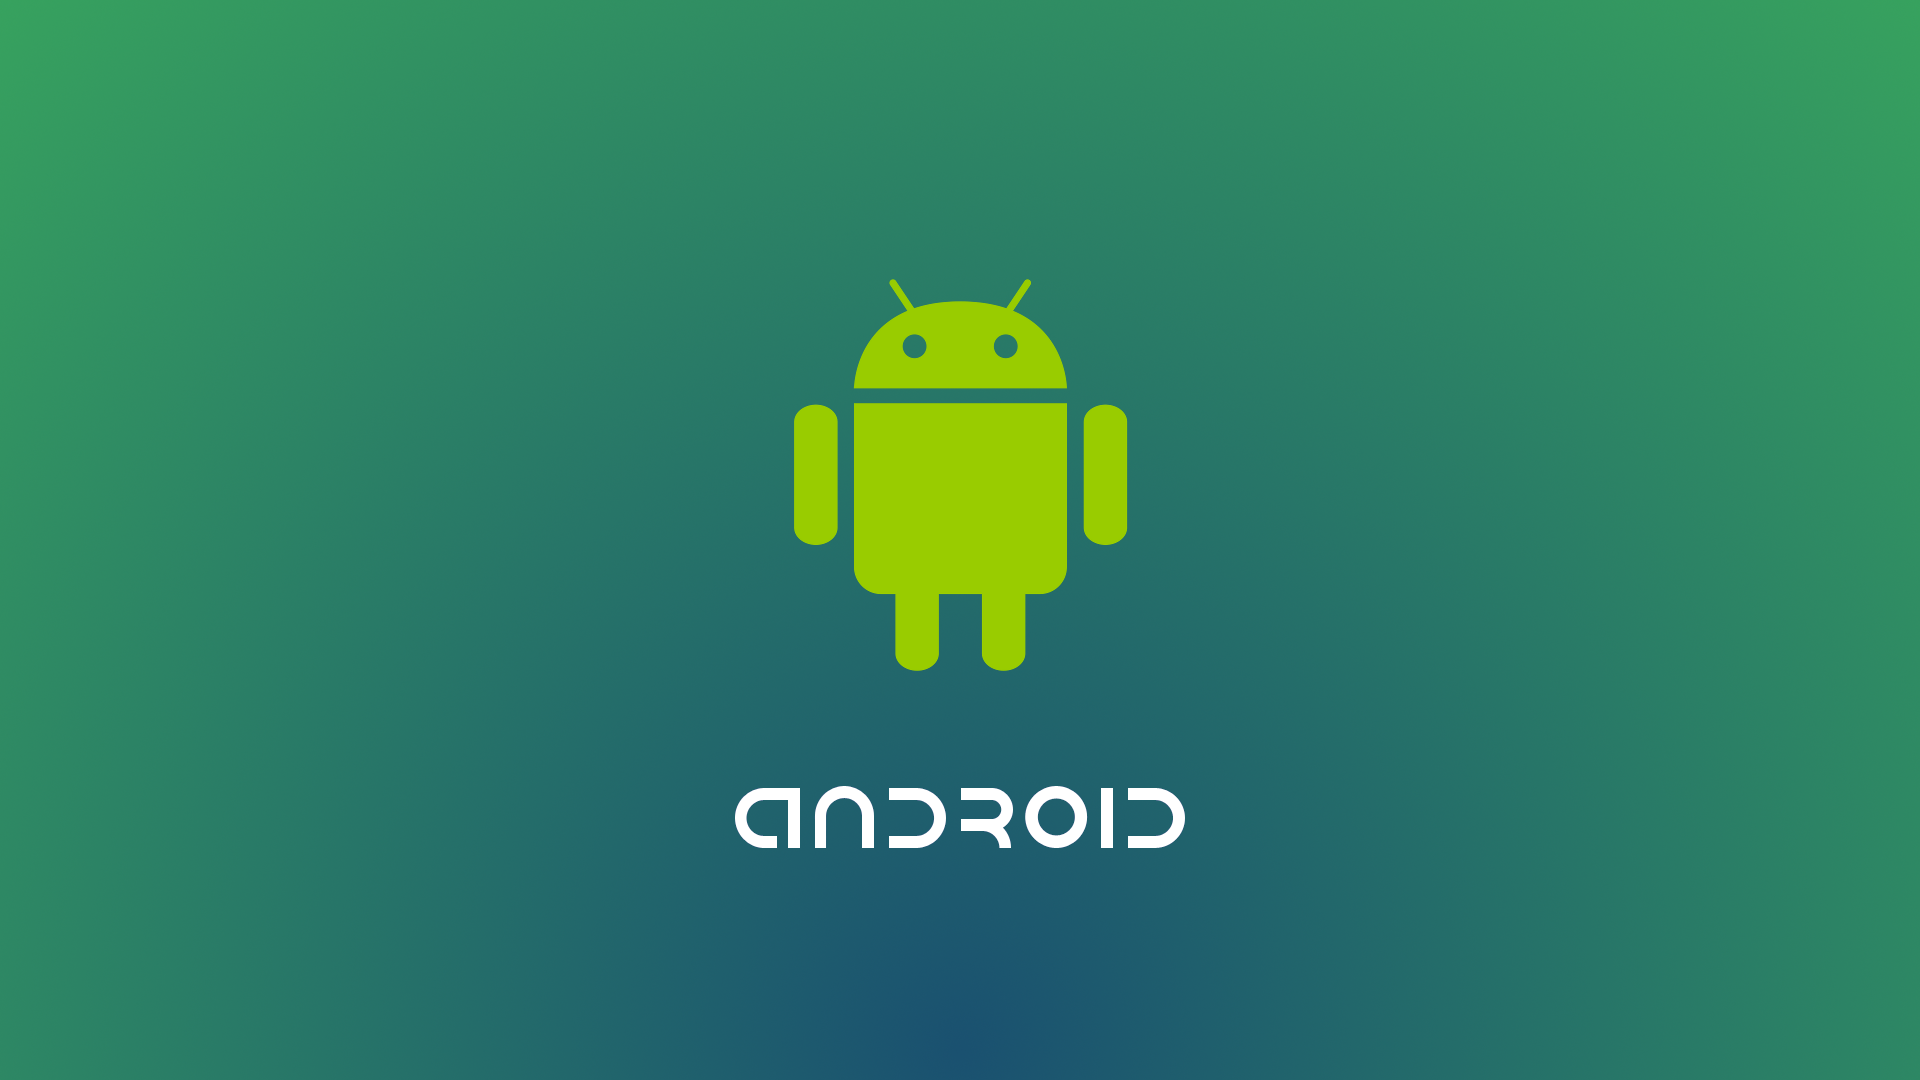 Học lập trình Android trên dự án thực tế cùng Chuyên gia giàu Kinh Nghiệm!